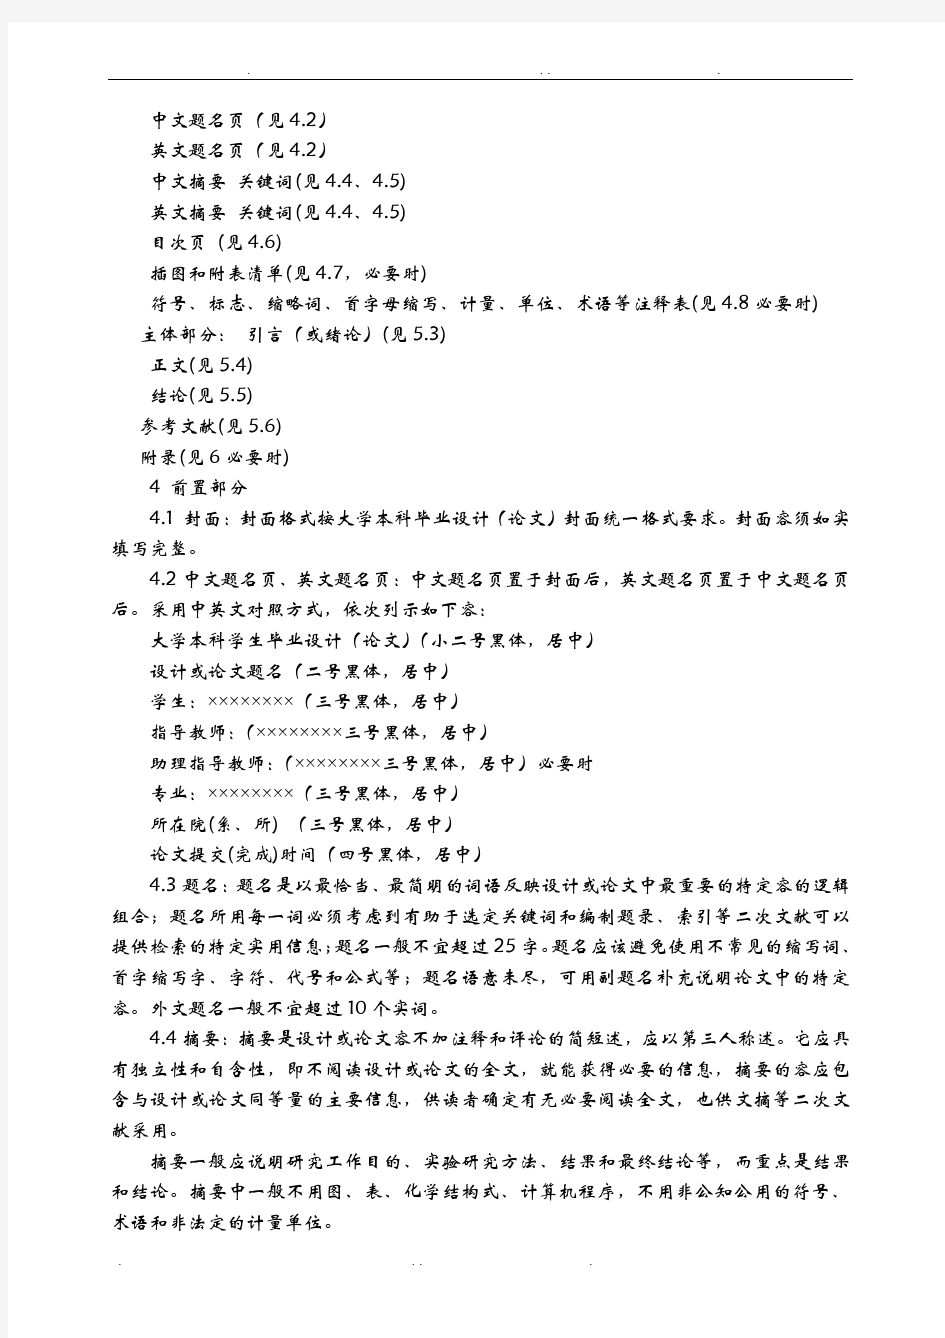 重庆大学本科毕业设计(论文)撰写规范化要求